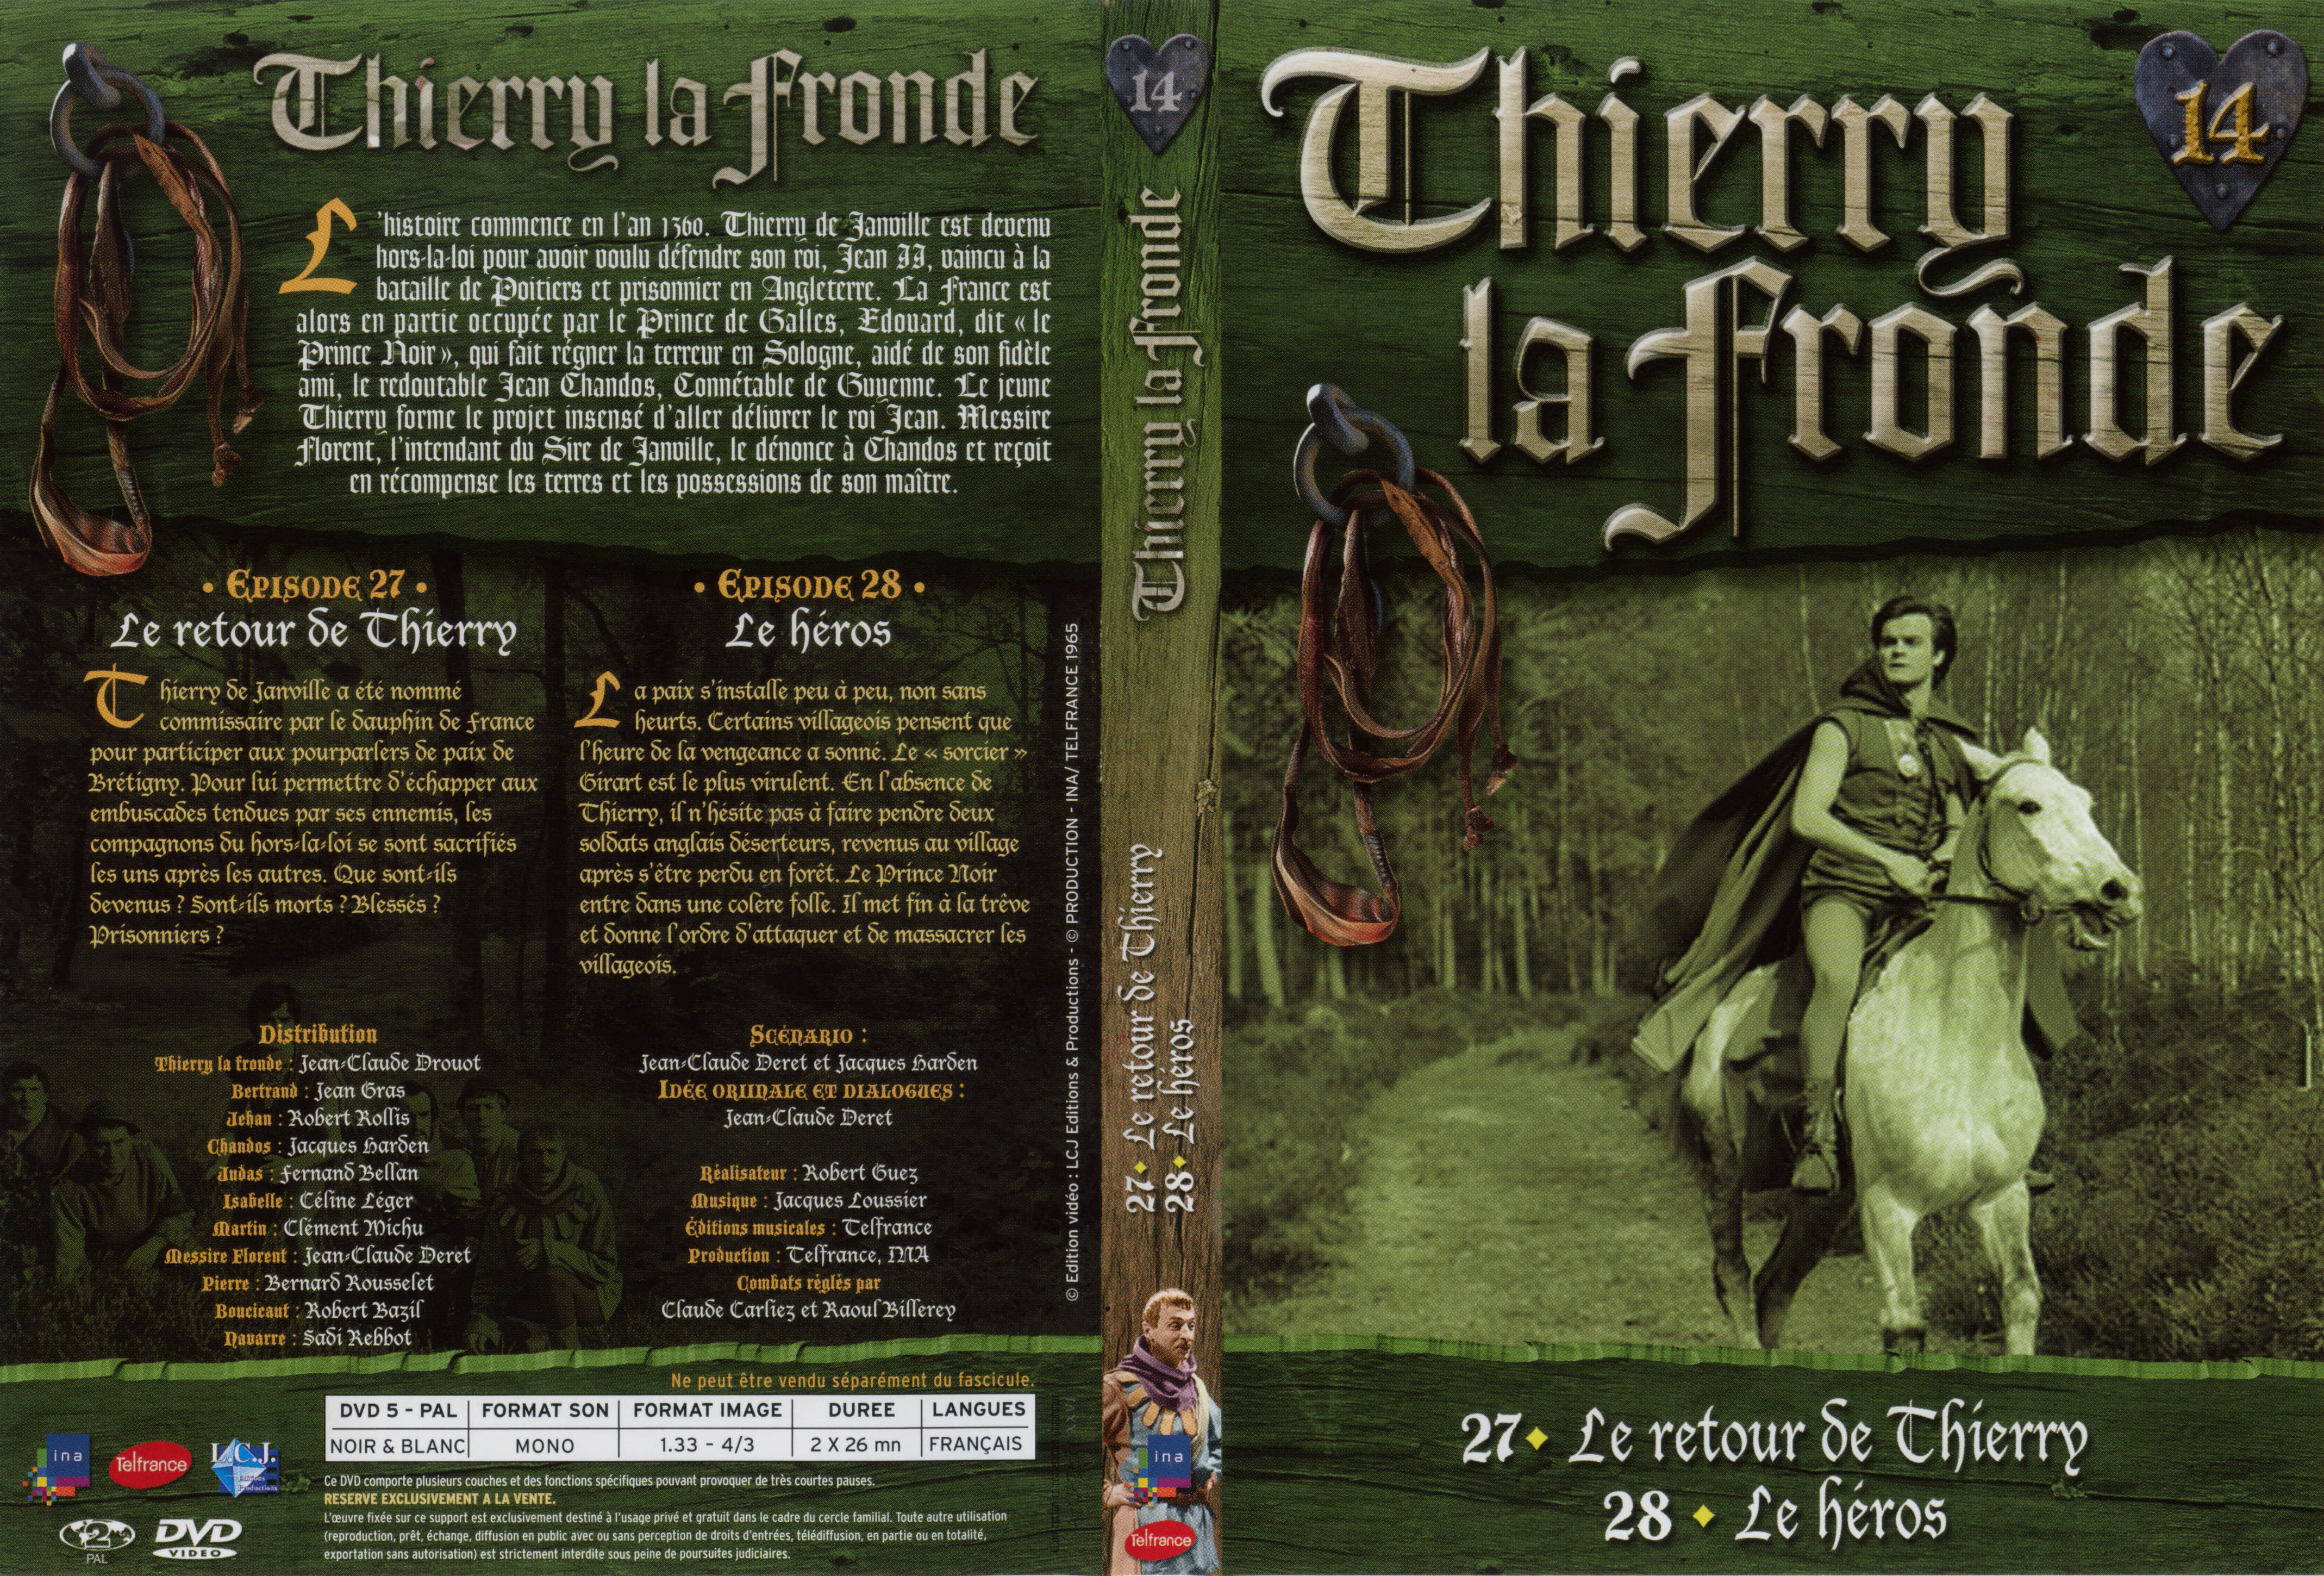 Jaquette DVD Thierry la Fronde vol 14